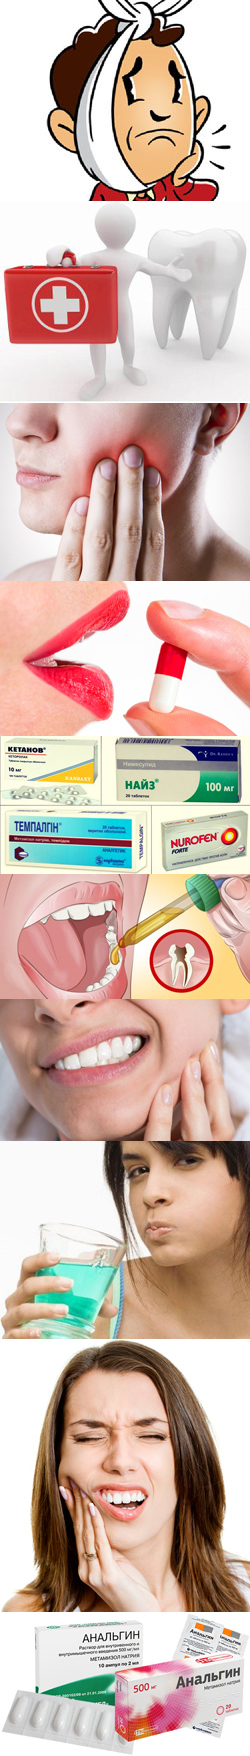 Препараты при зубной боли. Форма препаратов. Обезболивающие при различных видах зубной боли